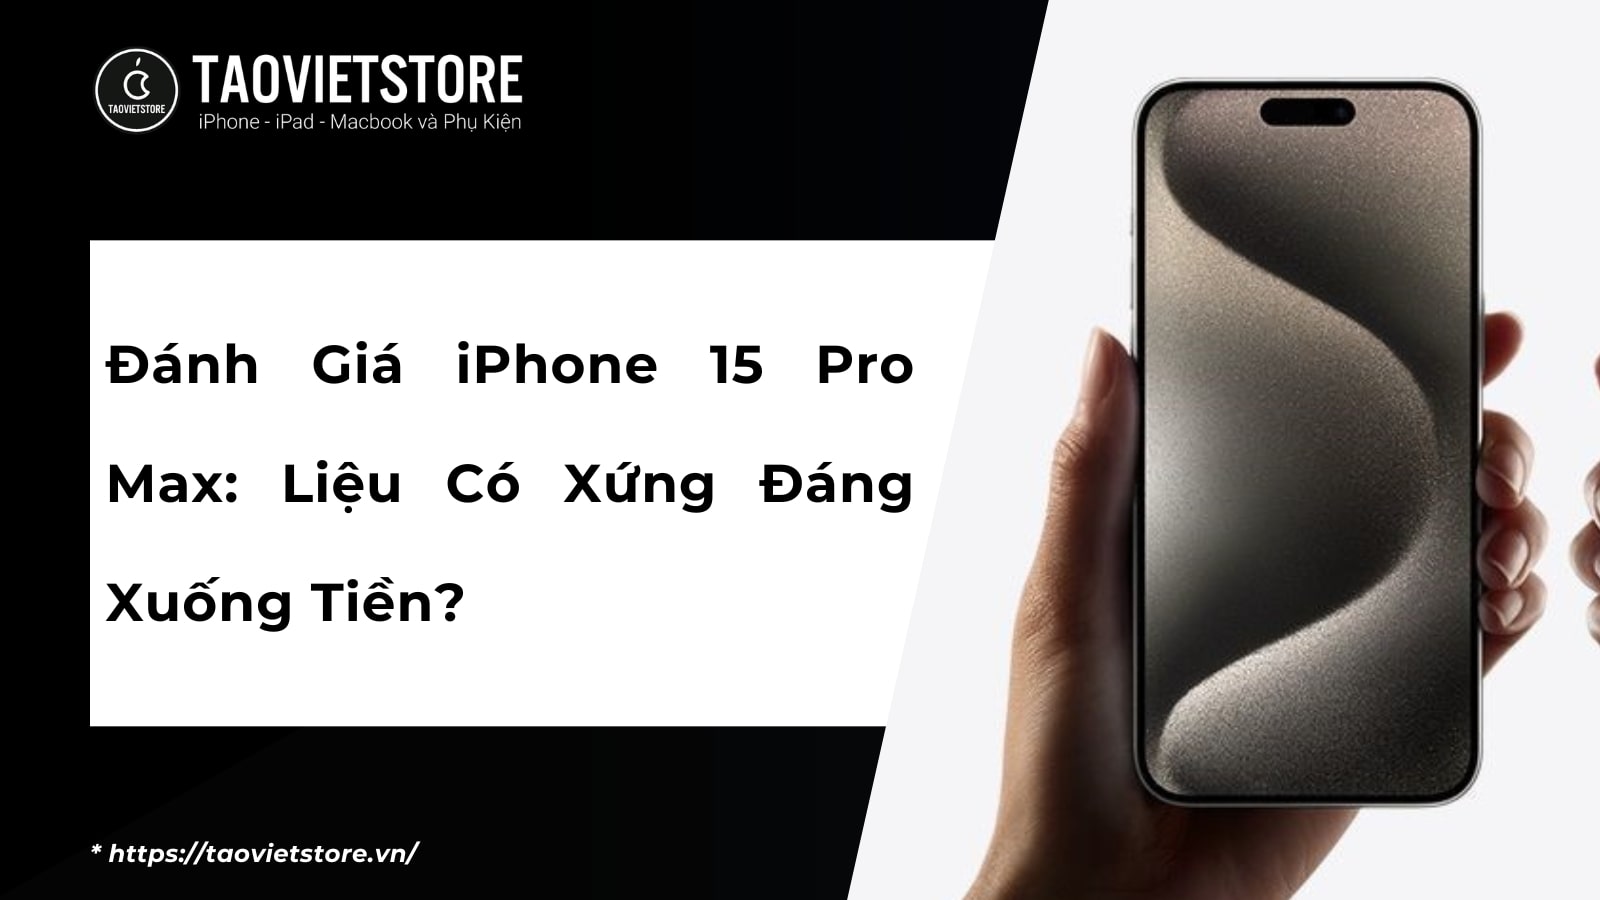 Đánh Giá iPhone 15 Pro Max: Liệu Có Xứng Đáng Xuống Tiền